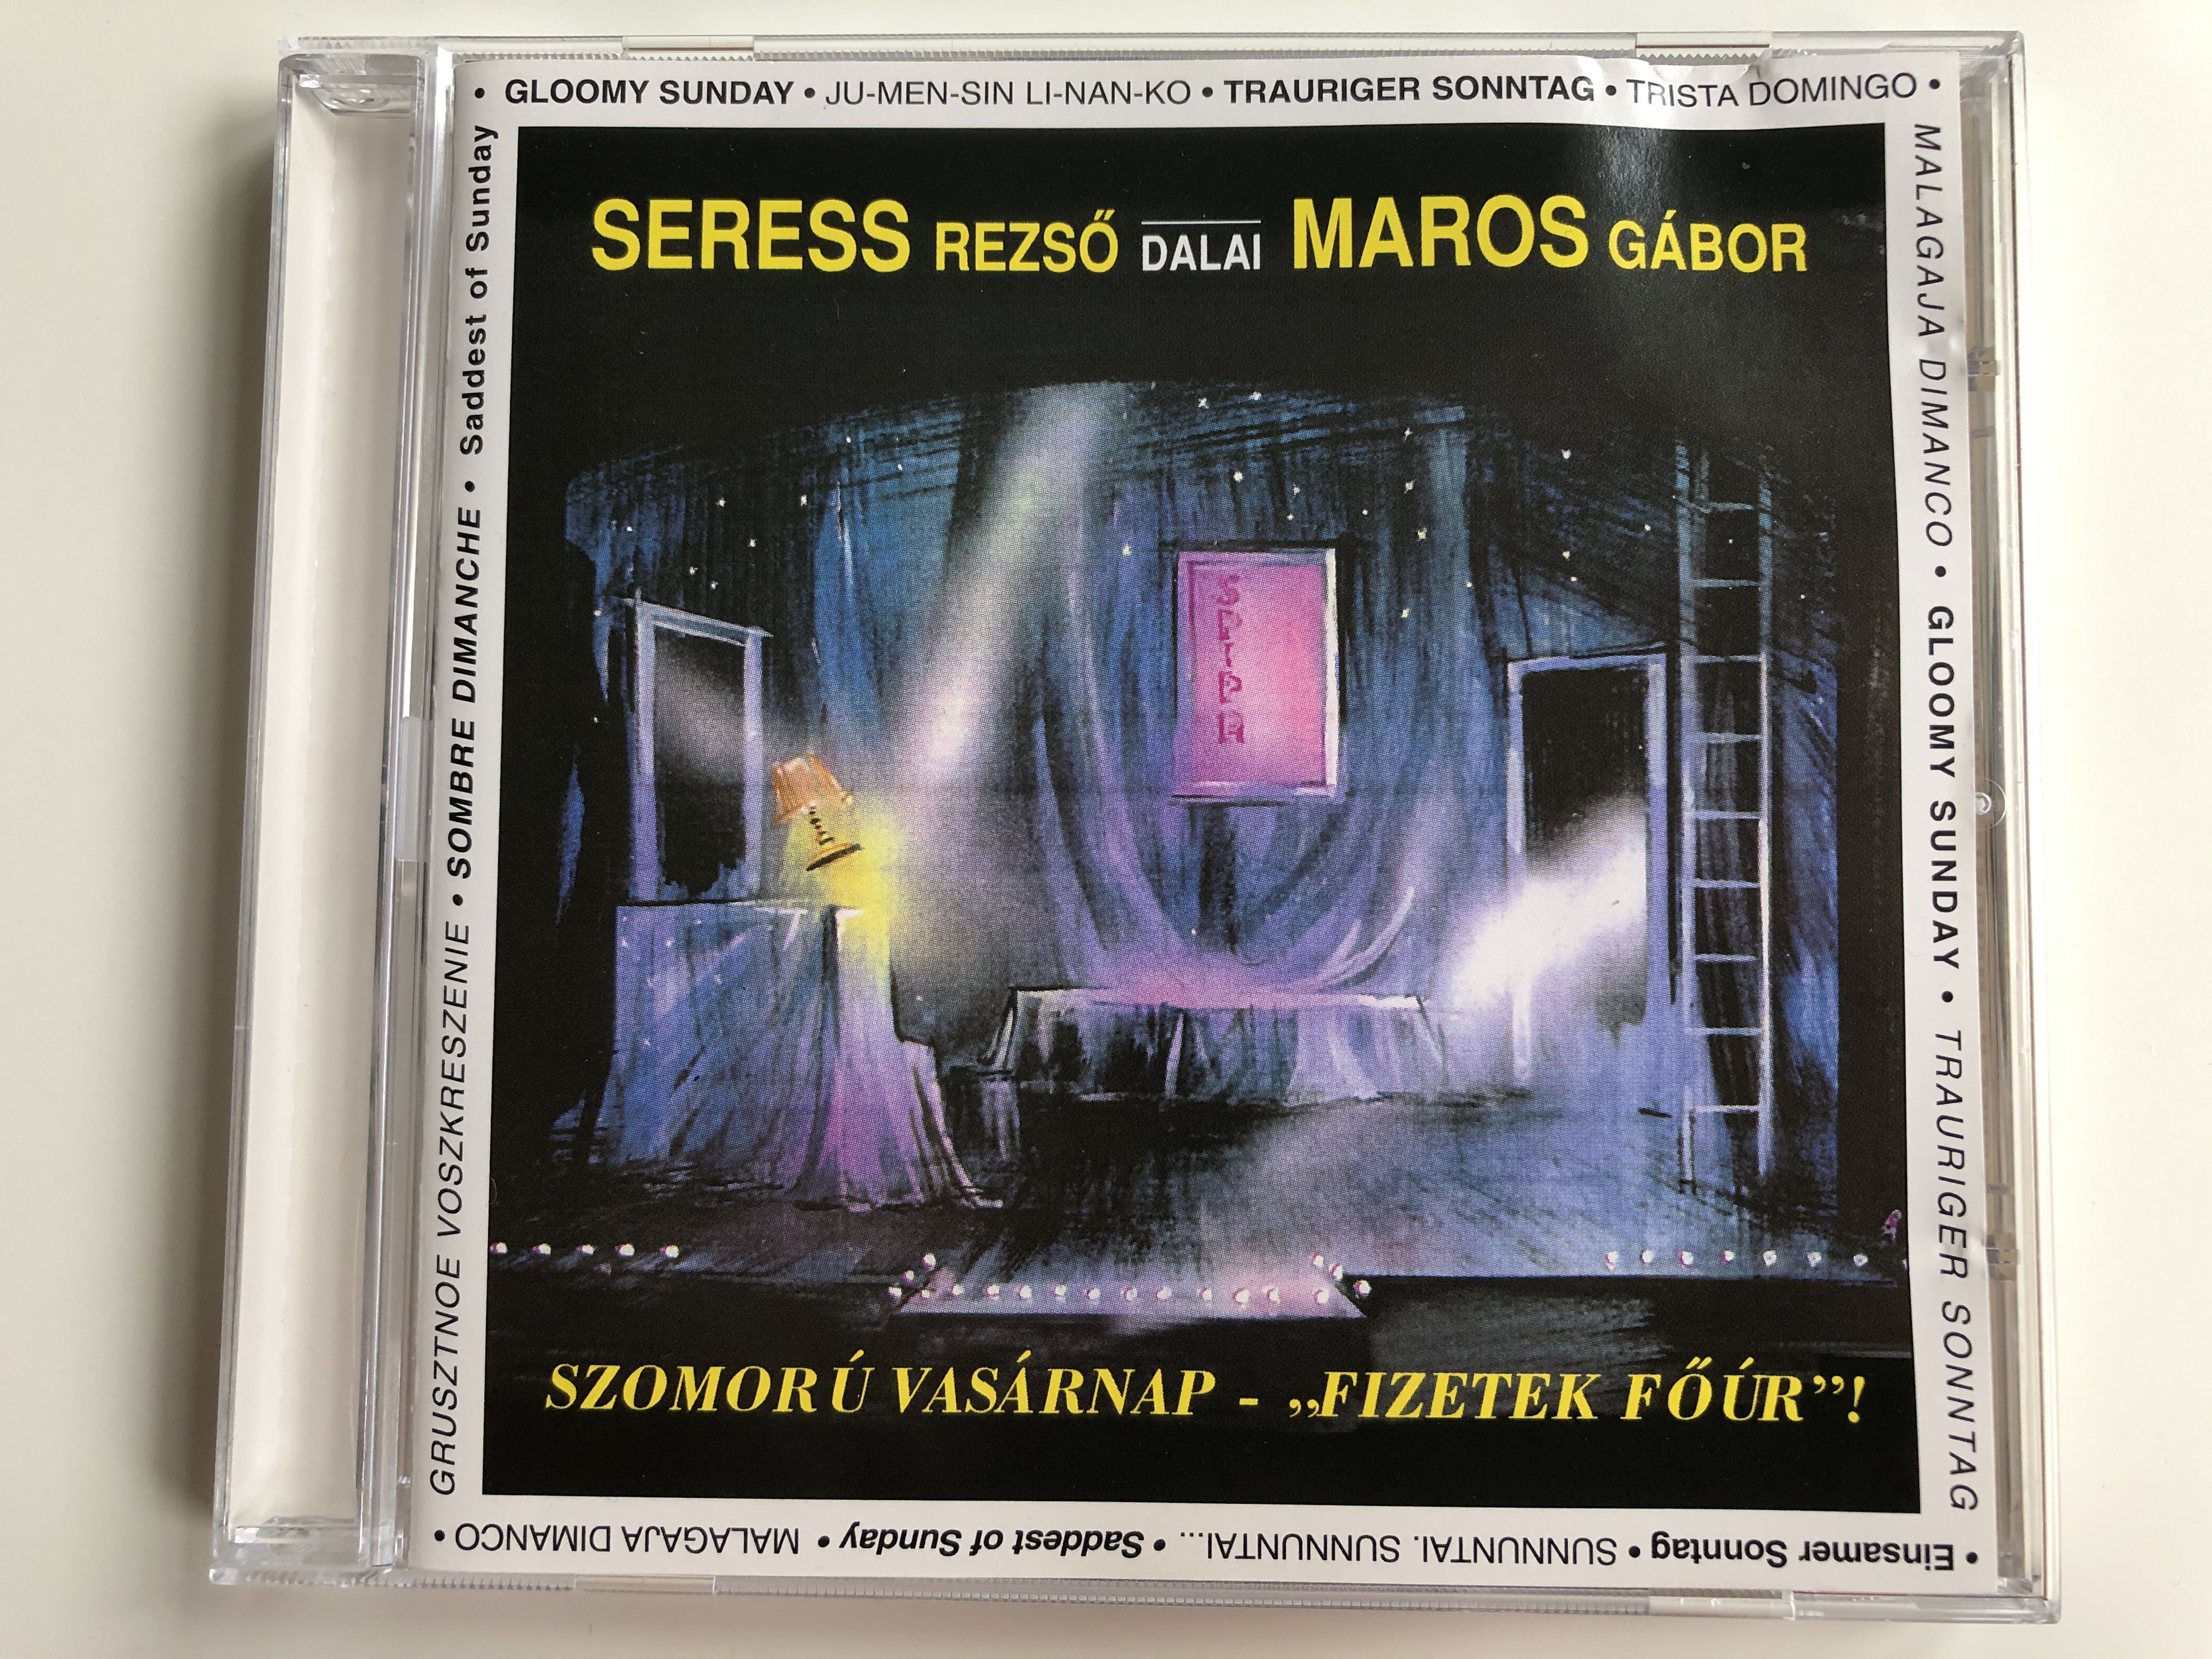 seress-rezso-dalai-maros-gabor-szomoru-vasarnap-fizetek-four-maros-gabor-mayer-audio-cd-1995-mgm-001-1-.jpg